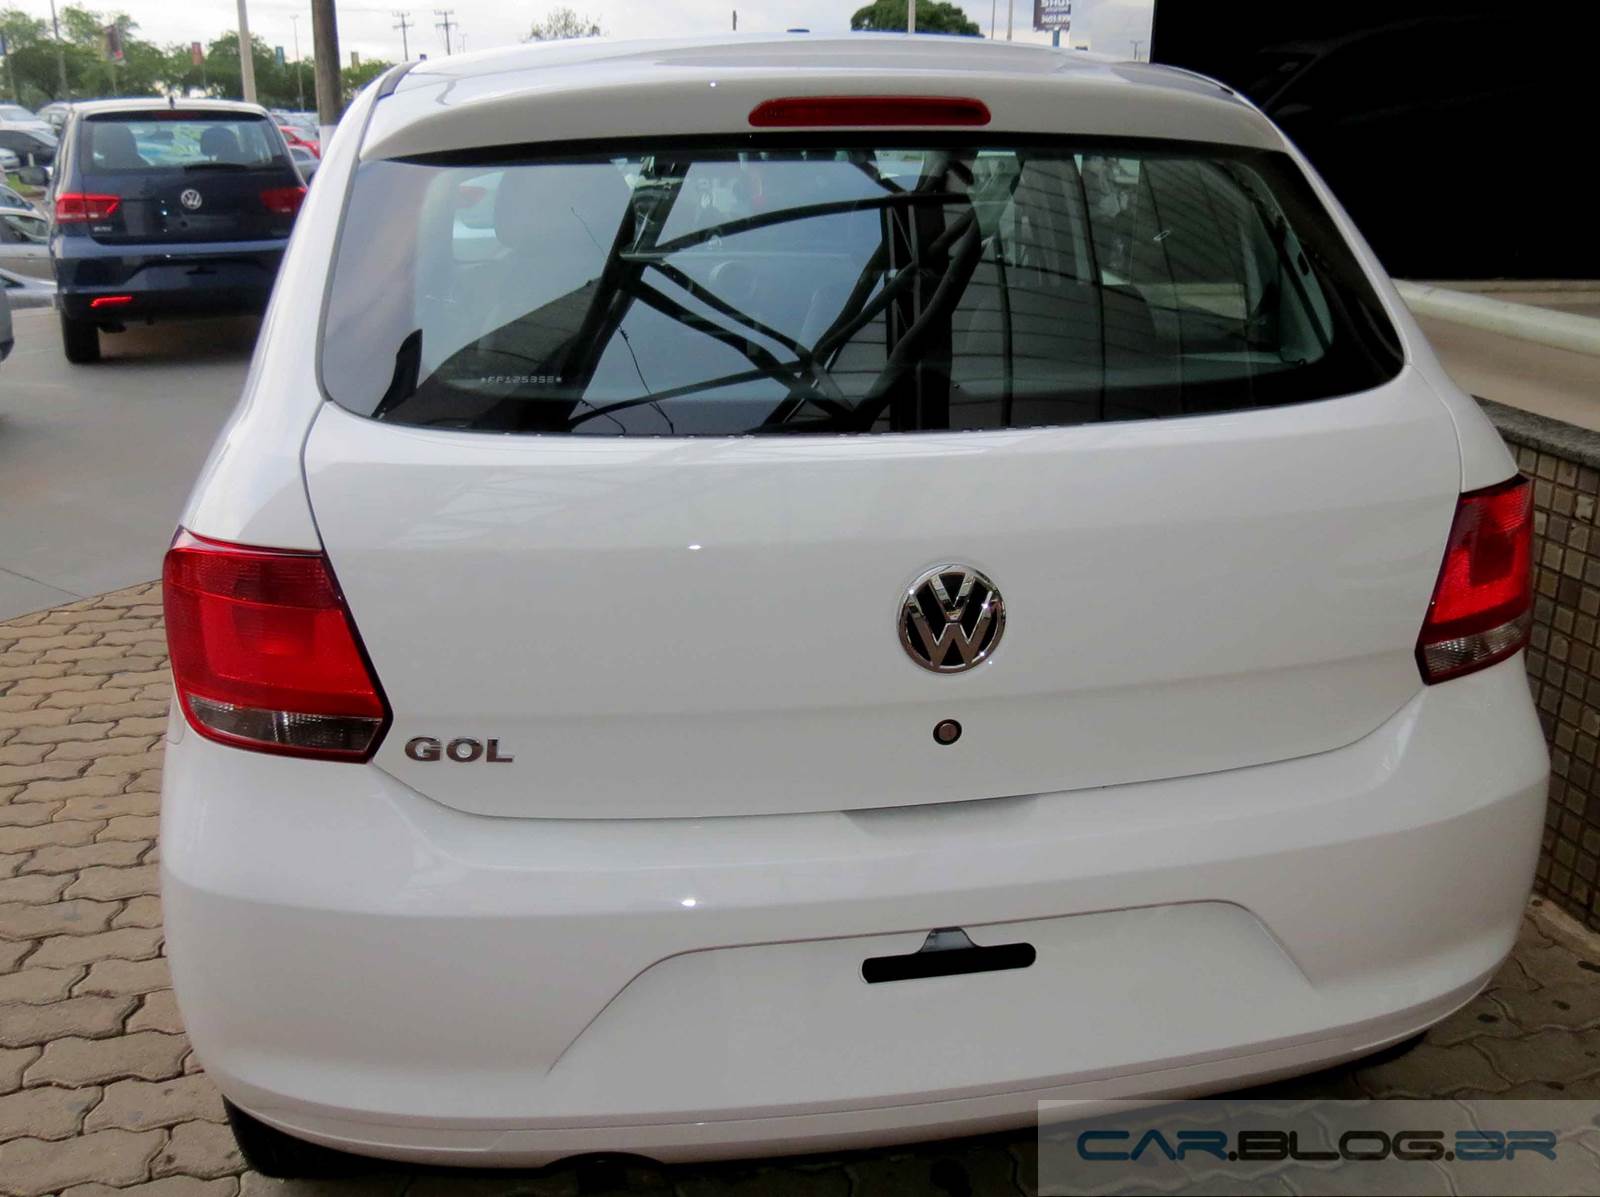 Volkswagen Gol recupera a liderança de vendas em 2014